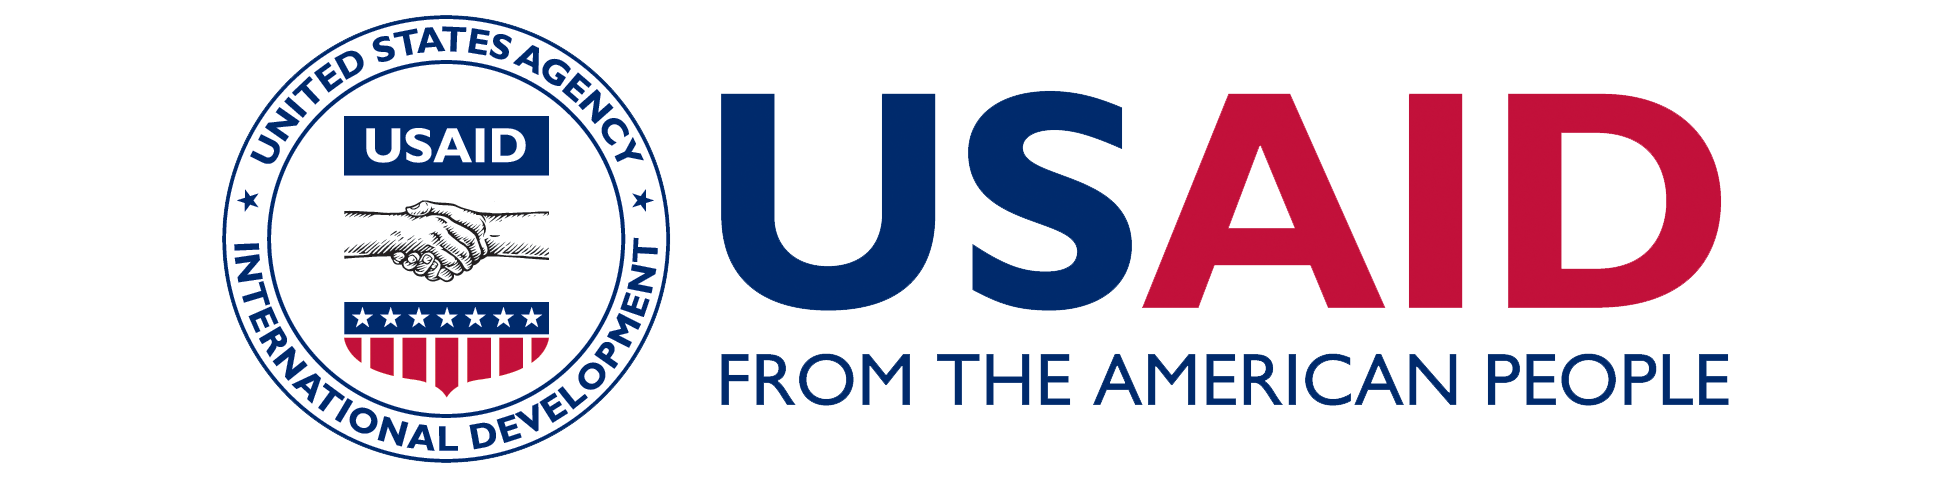 USAID_logo